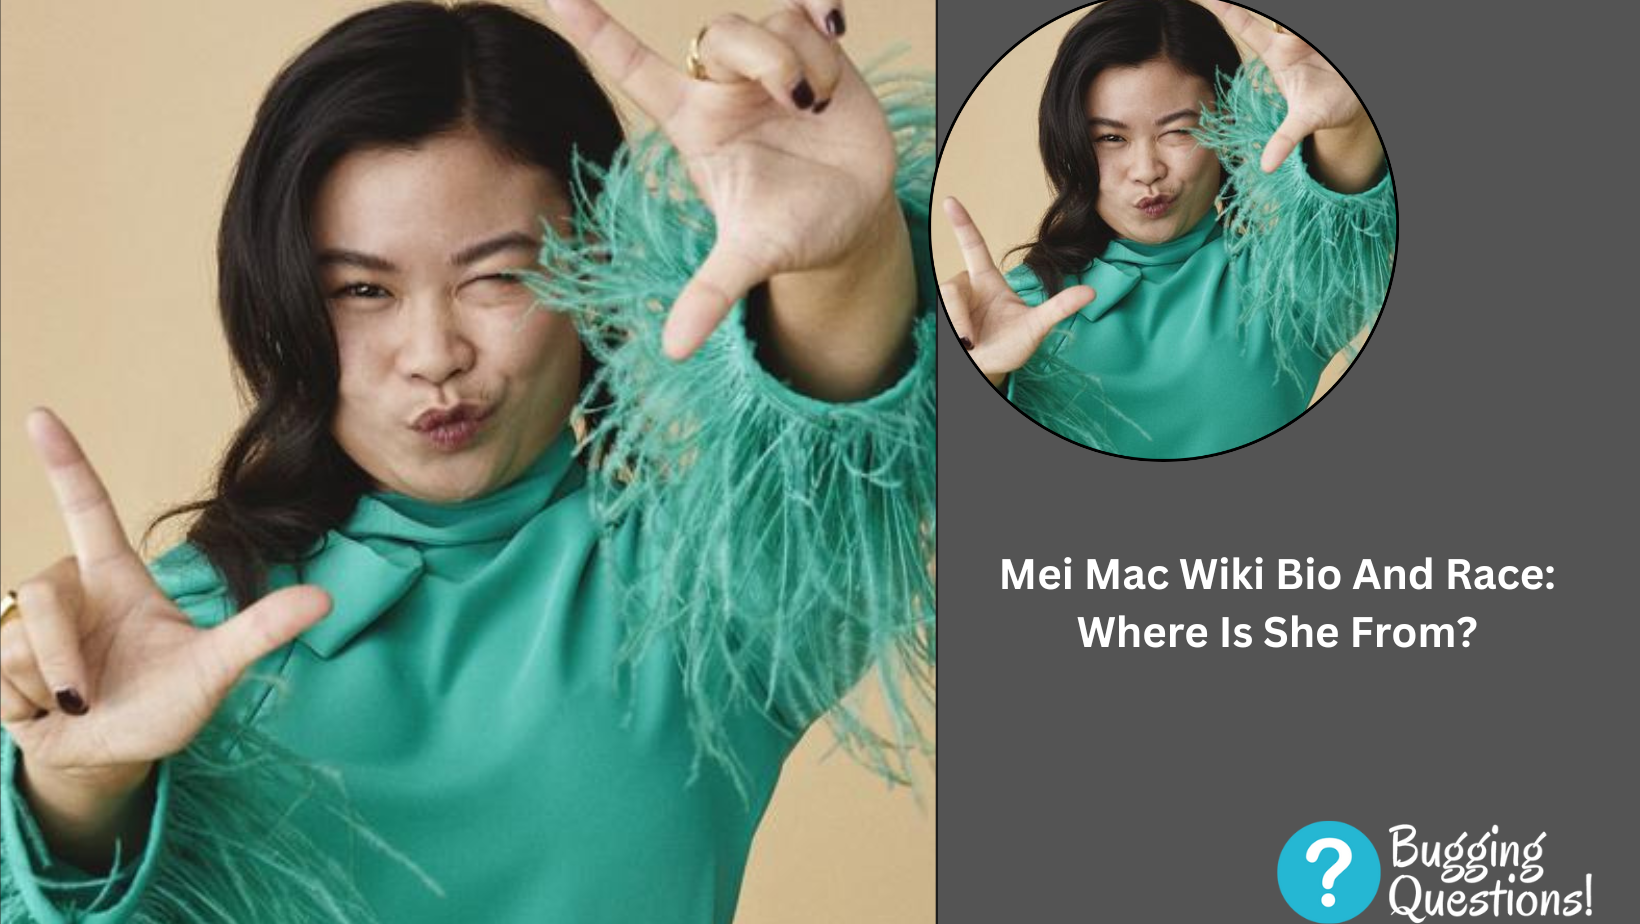 Mei Mac Wiki Bio And Race